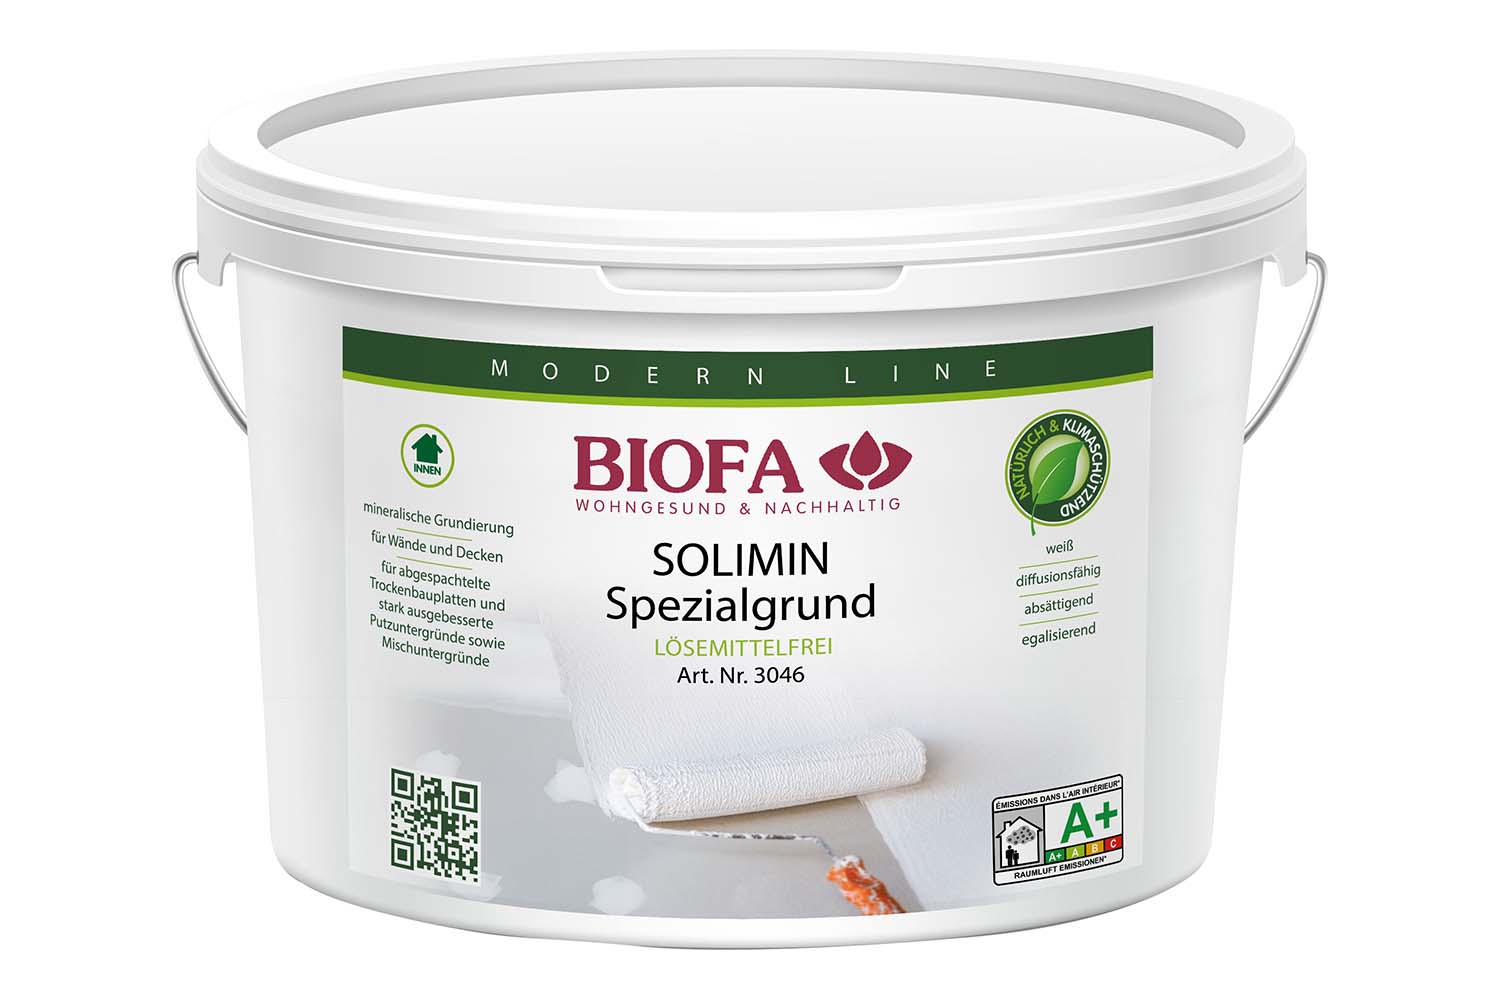 Biofa SOLIMIN Spezialgrund, lösemittelfrei